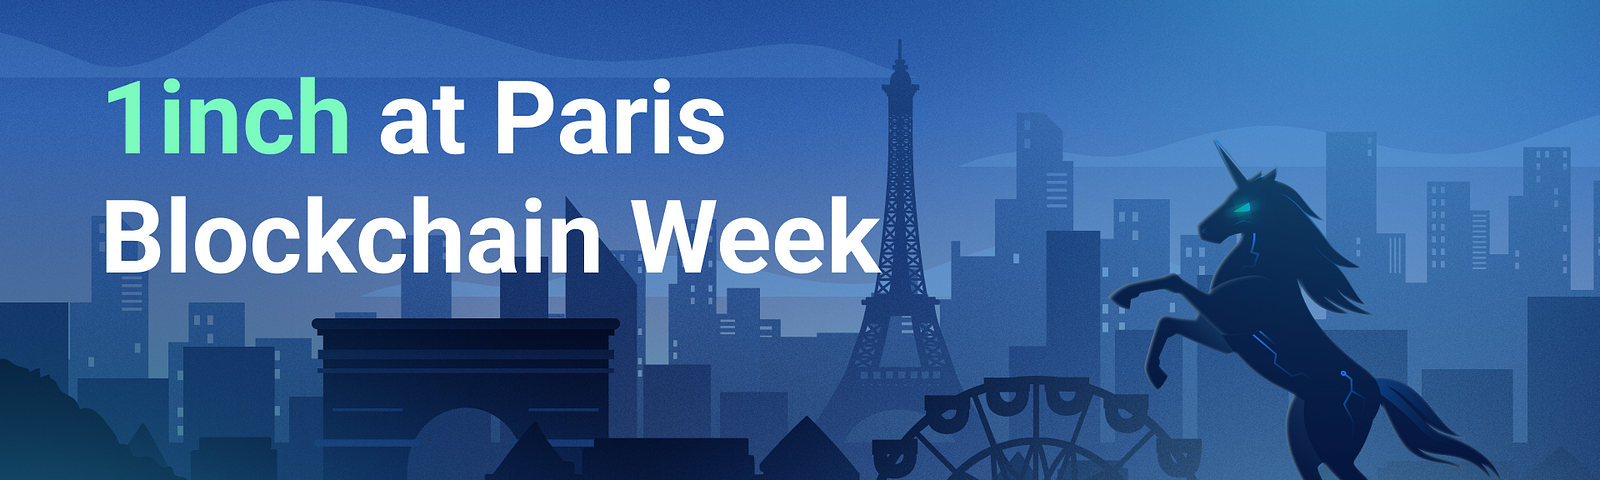 1inch to hit Paris Blockchain Week 2023